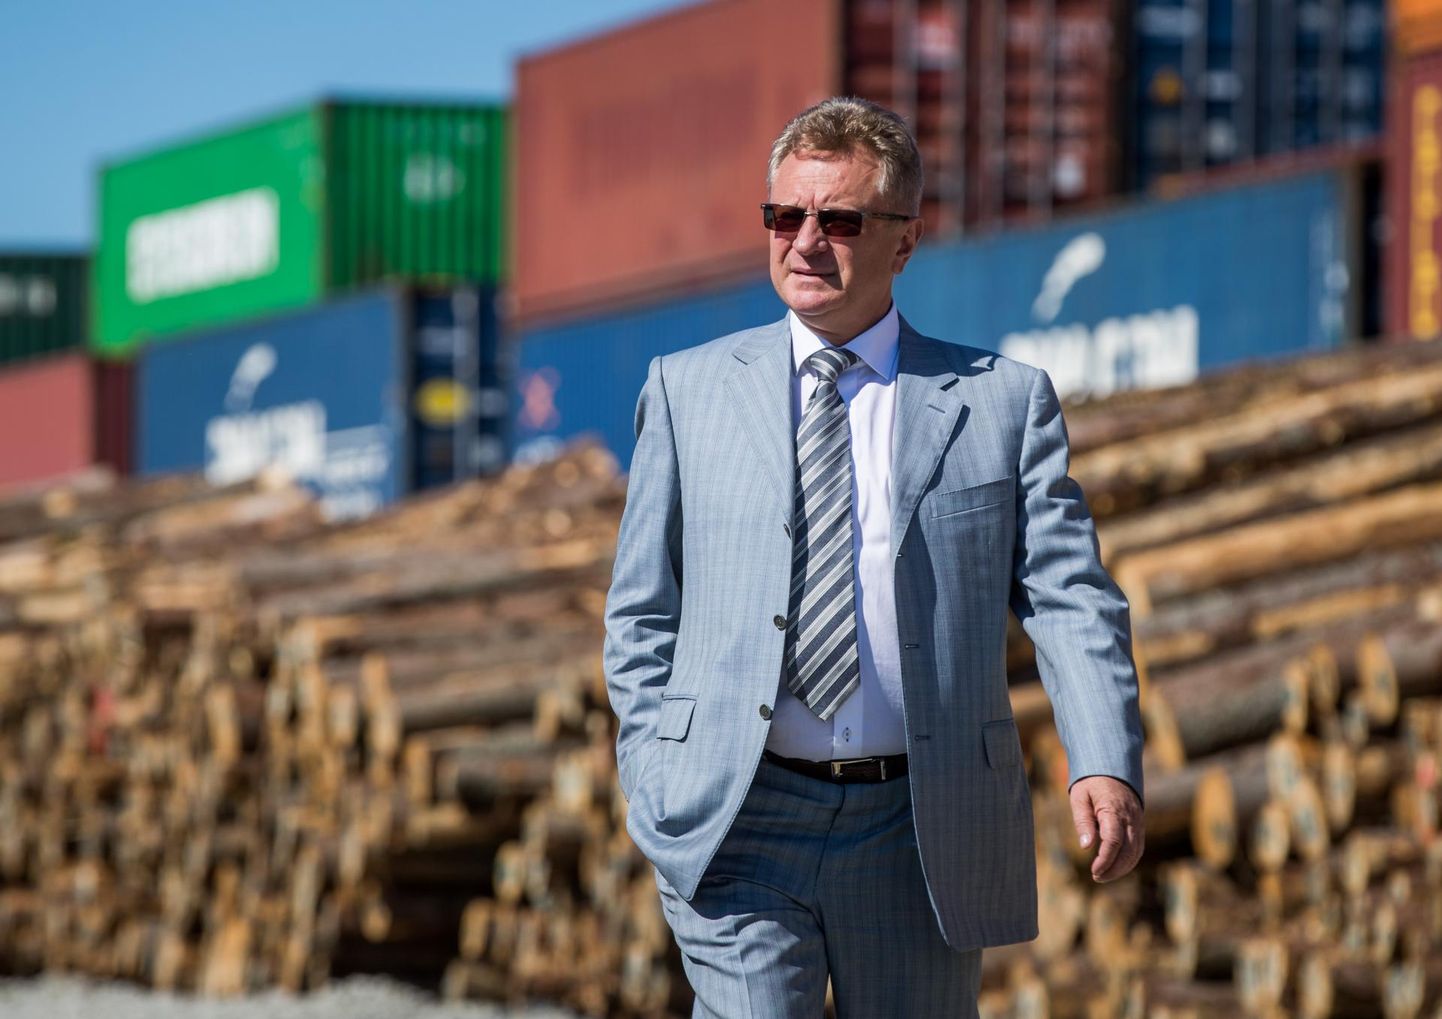 Transiidikeskuse ASi juhatuse esimees Vladimir Popov on valmis Muuga sadamas asuvas konteinerterminalis Hiina kaubarongi vastu võtma ning selle Eesti puidutooteid täis laadima.